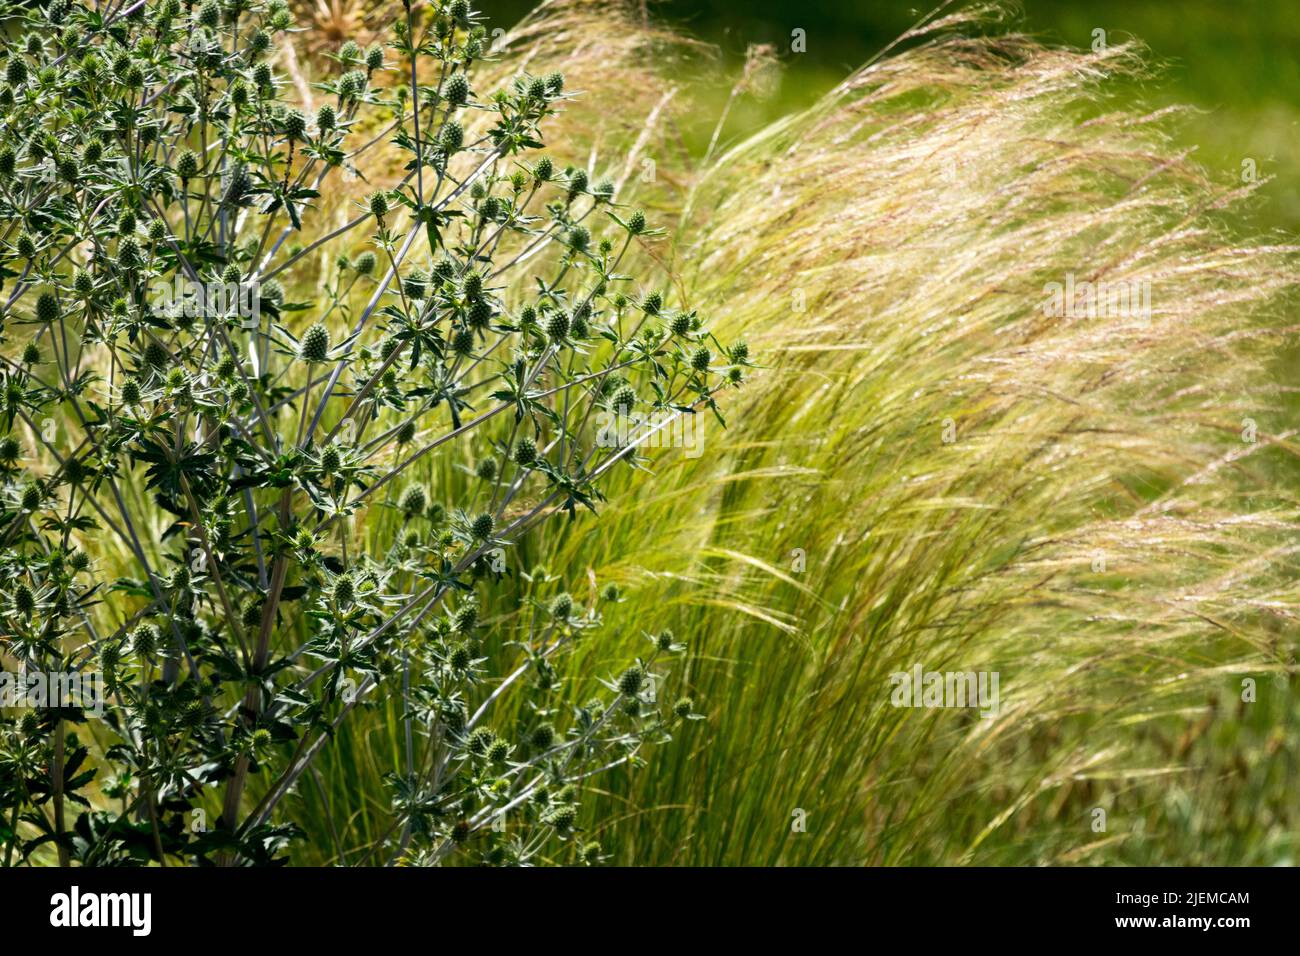 Stipa tenuissima colas de poni aka Nasella tenuissima, plantas mixtas de hierba de la pluma mexicana en el acebo del mar del jardín, Eryngium Foto de stock